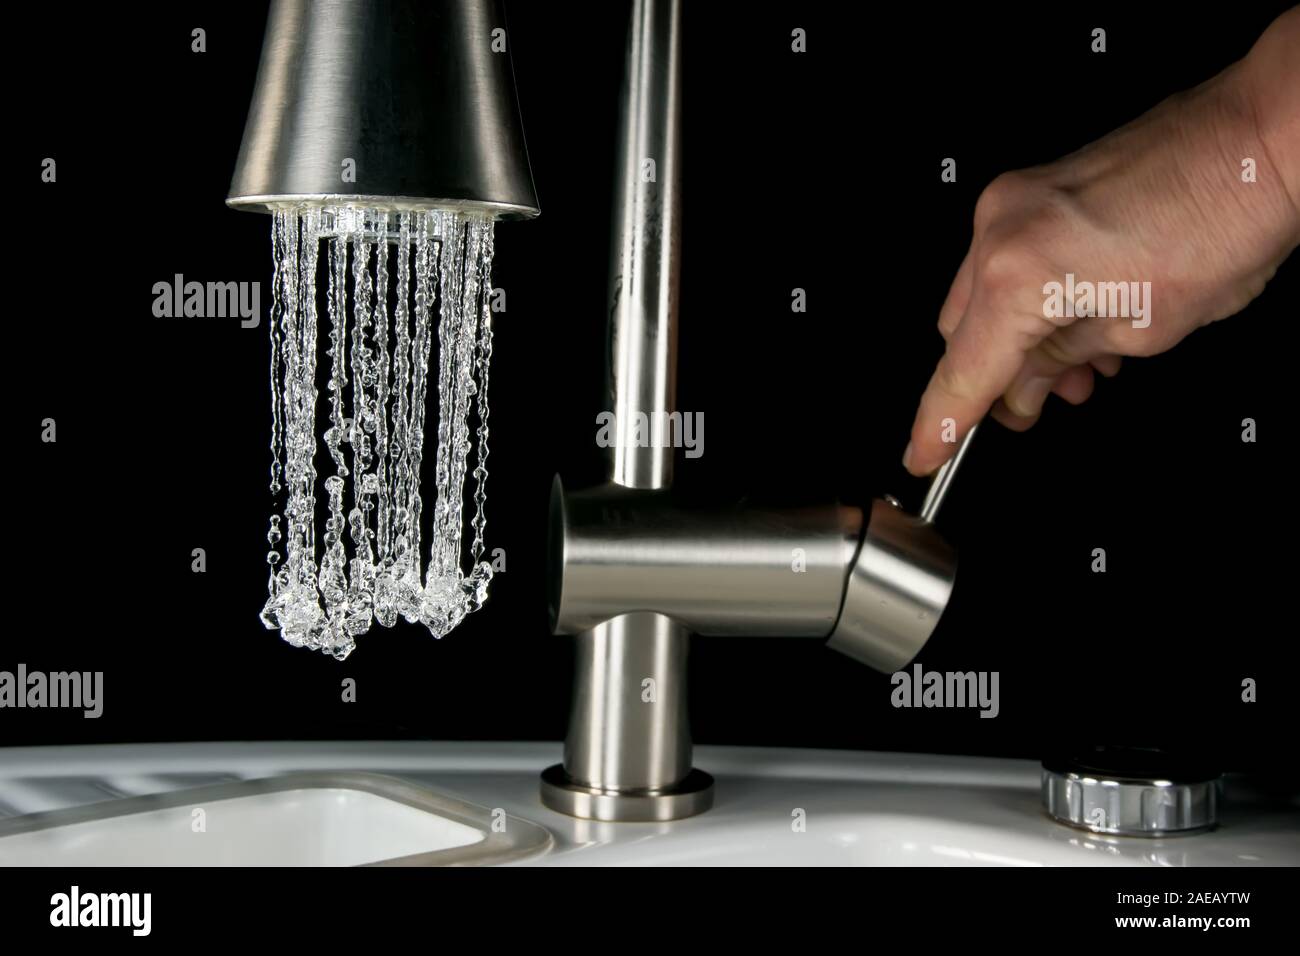 L'acqua uscente da un rubinetto - immagini ad alta velocità Foto Stock